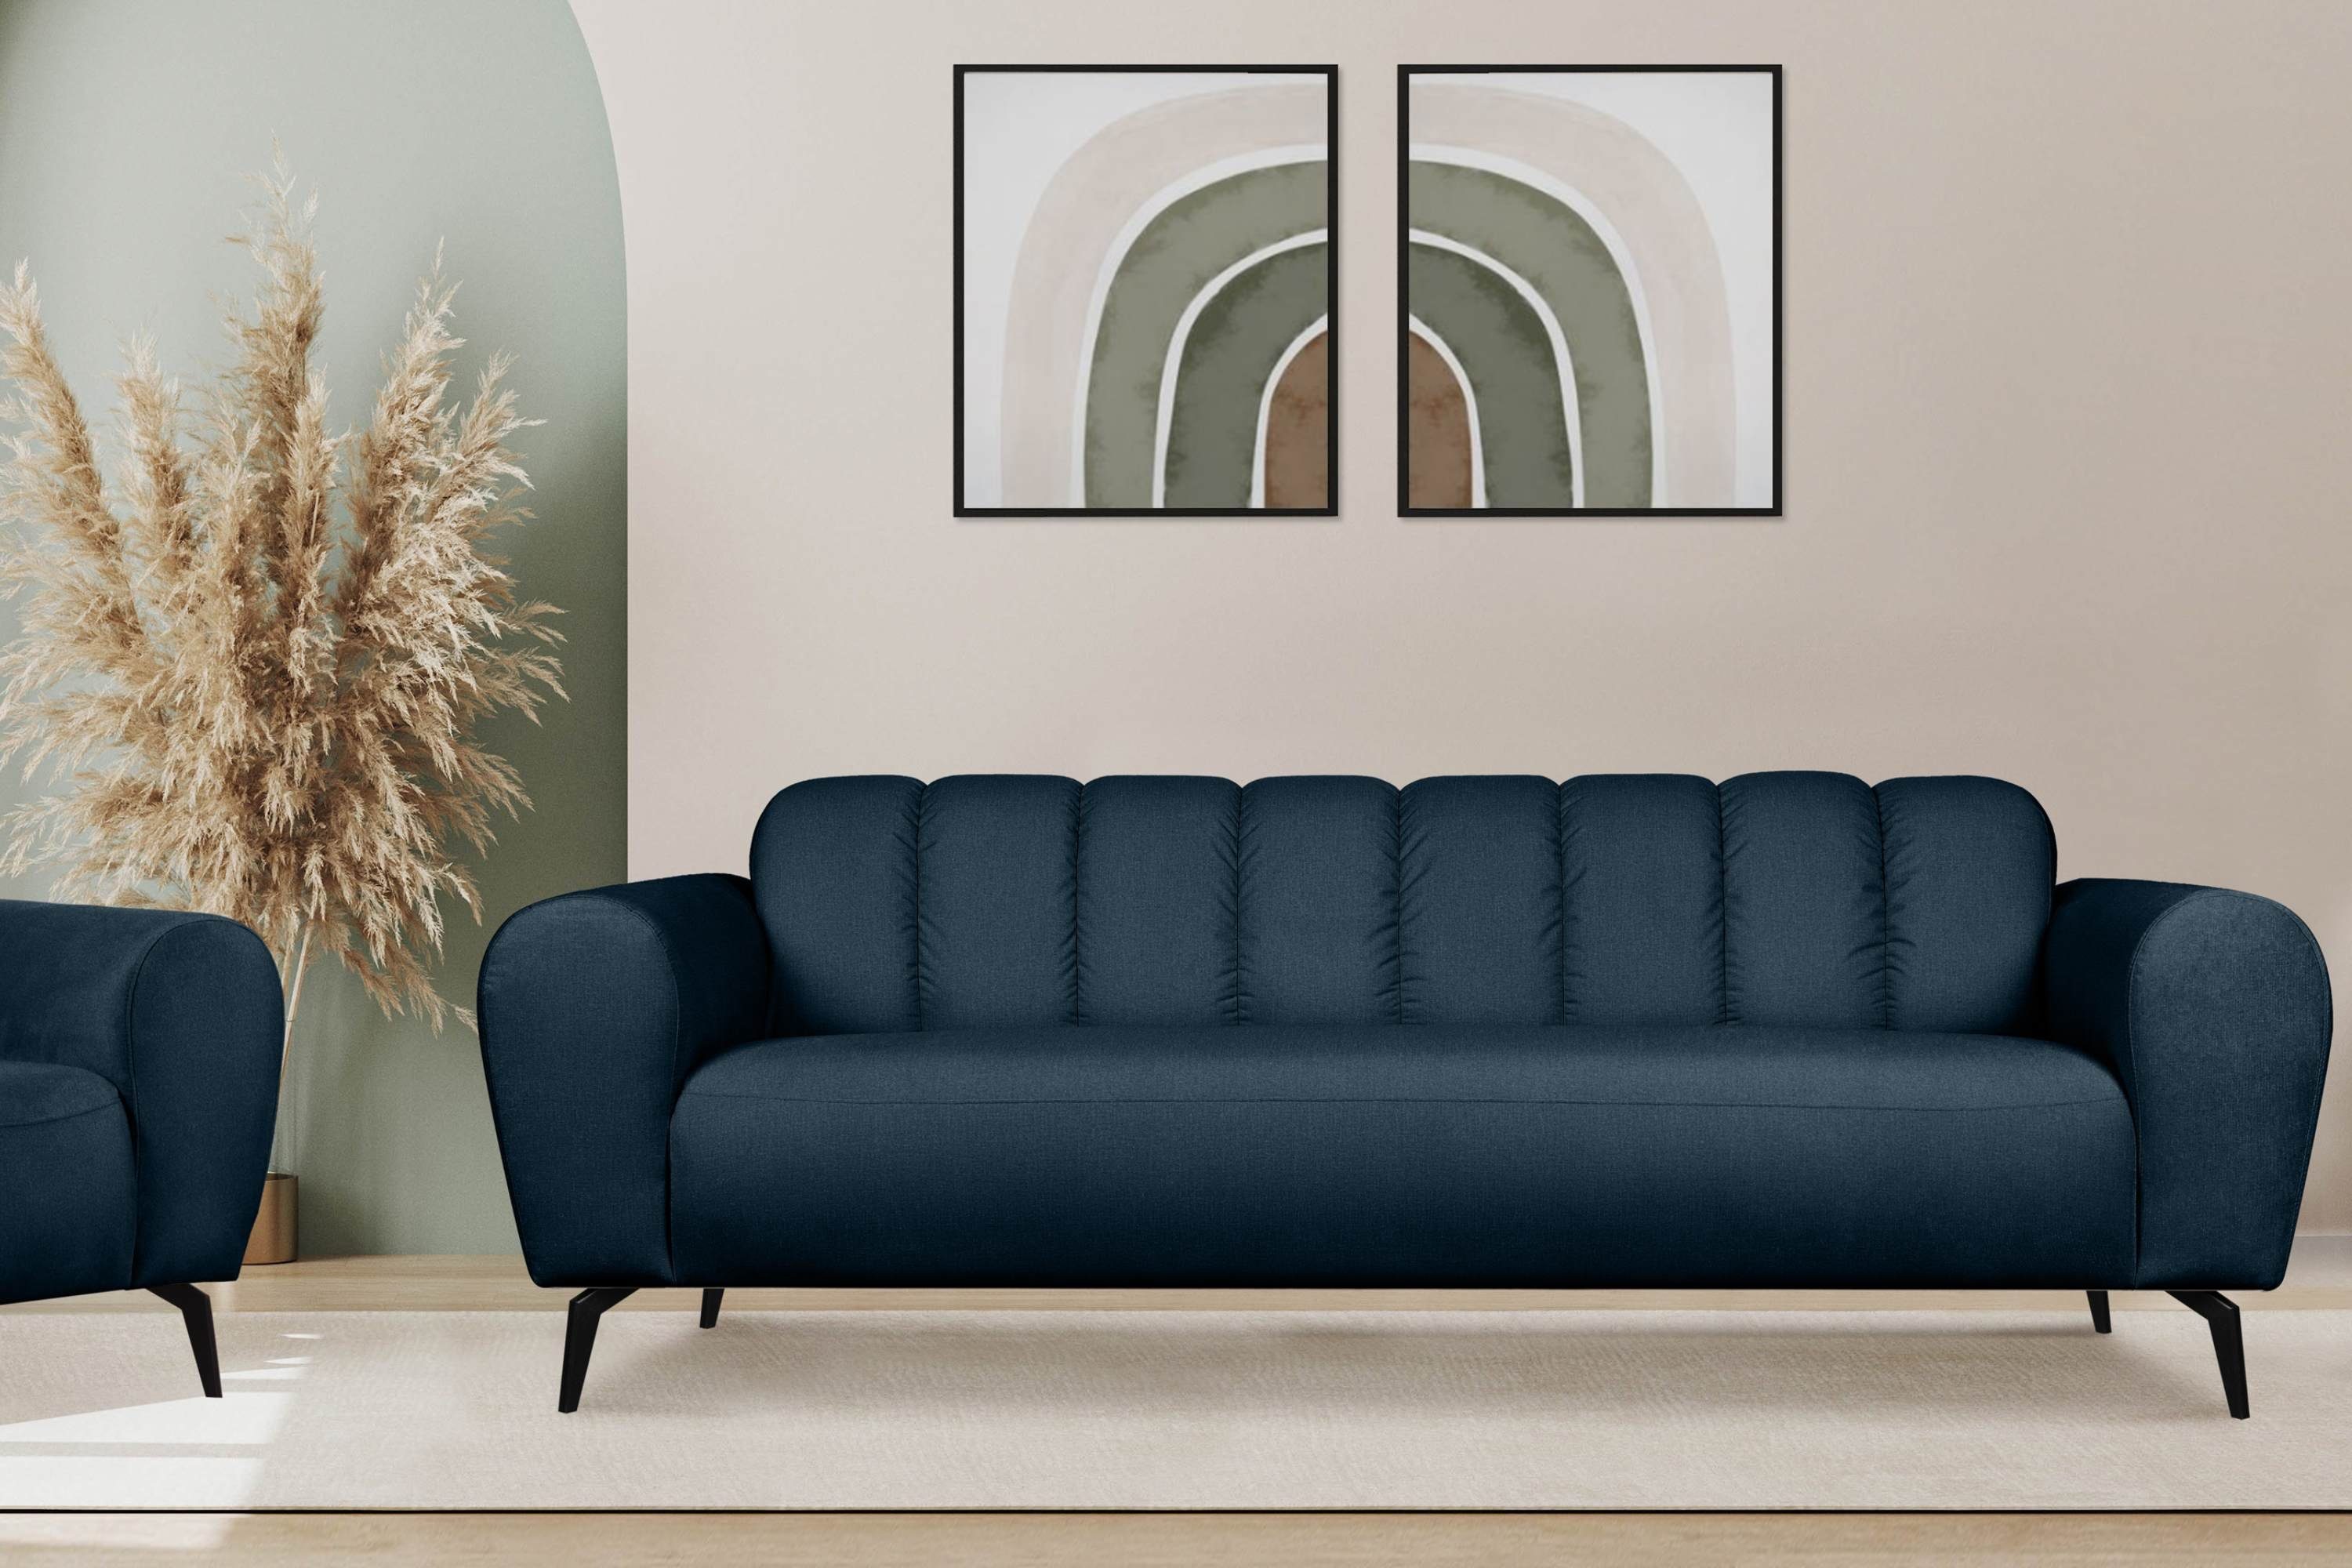 marineblau RUBERO Gewebe mit Design, marineblau modernes Konsimo Sofa | wasserabweisenden Sofa Eigenschaften Sitzer, 3